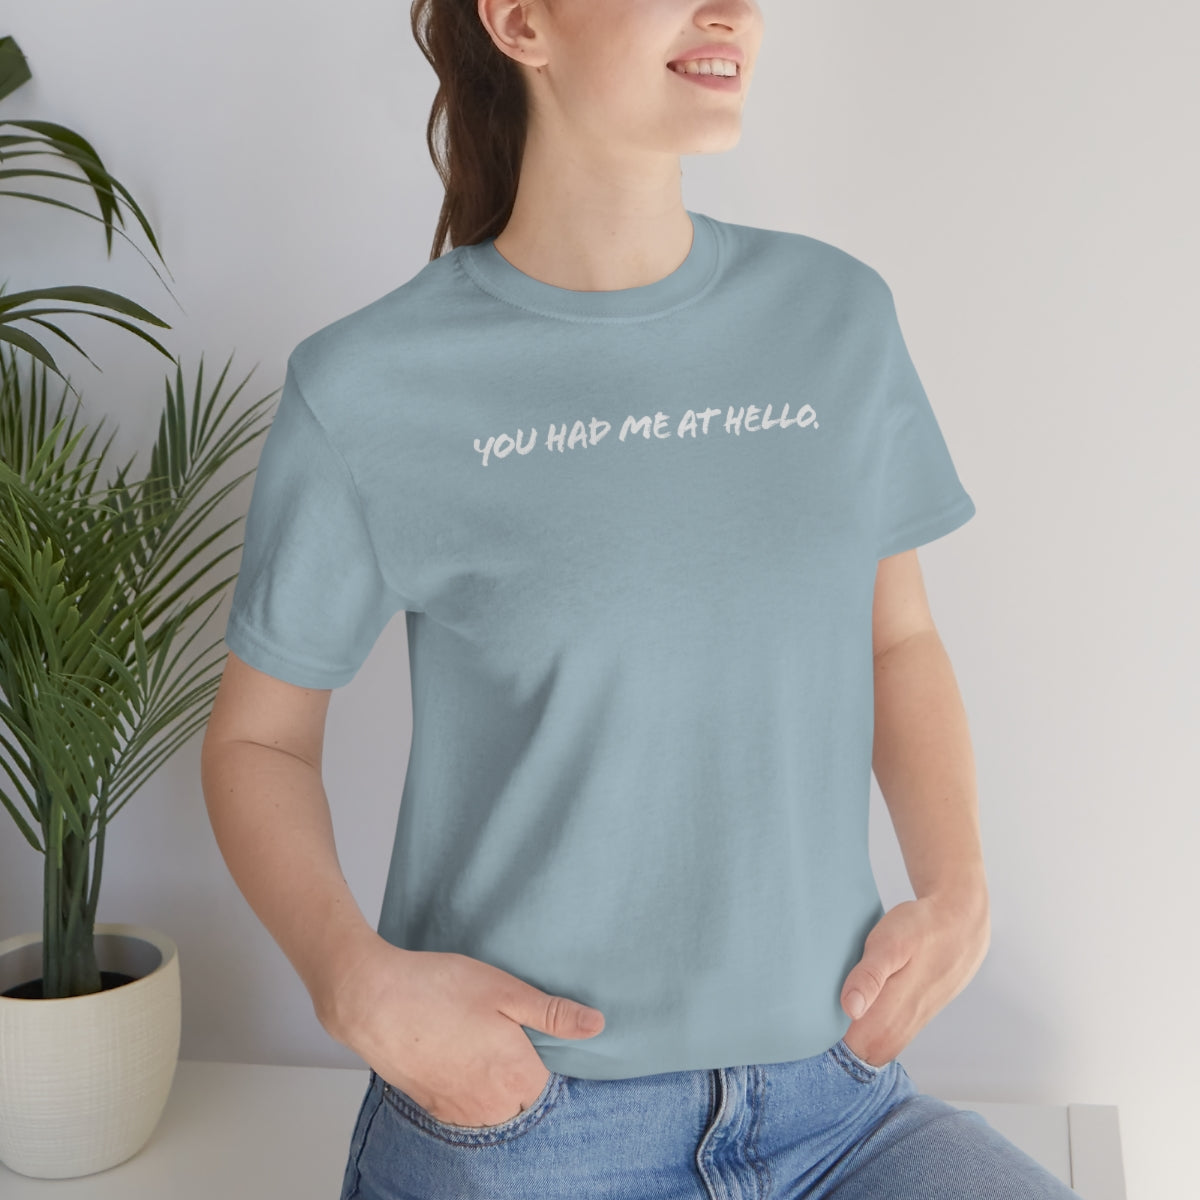 You had me at hello t-shirt